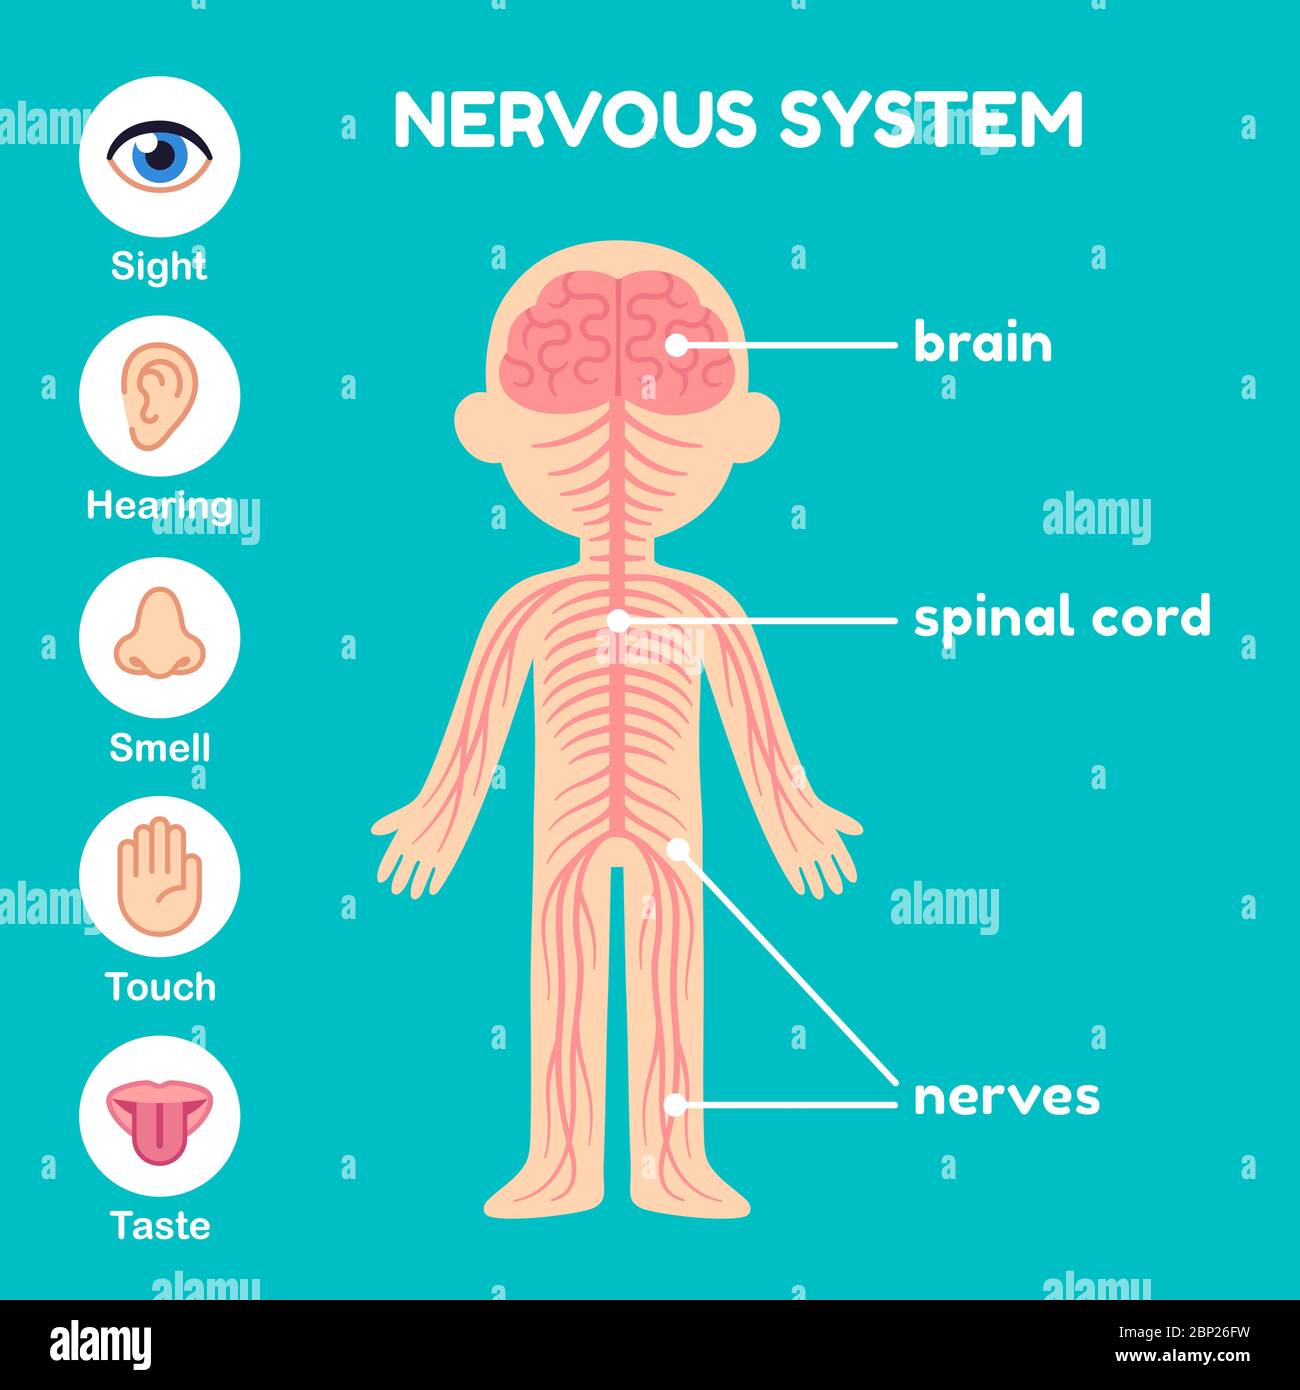 Nervensystem, pädagogische Anatomie Infografik für Kinder. Nerven, Rückenmark, Gehirn und die fünf Sinne. Einfache Cartoon-Stil Illustration. Stock Vektor